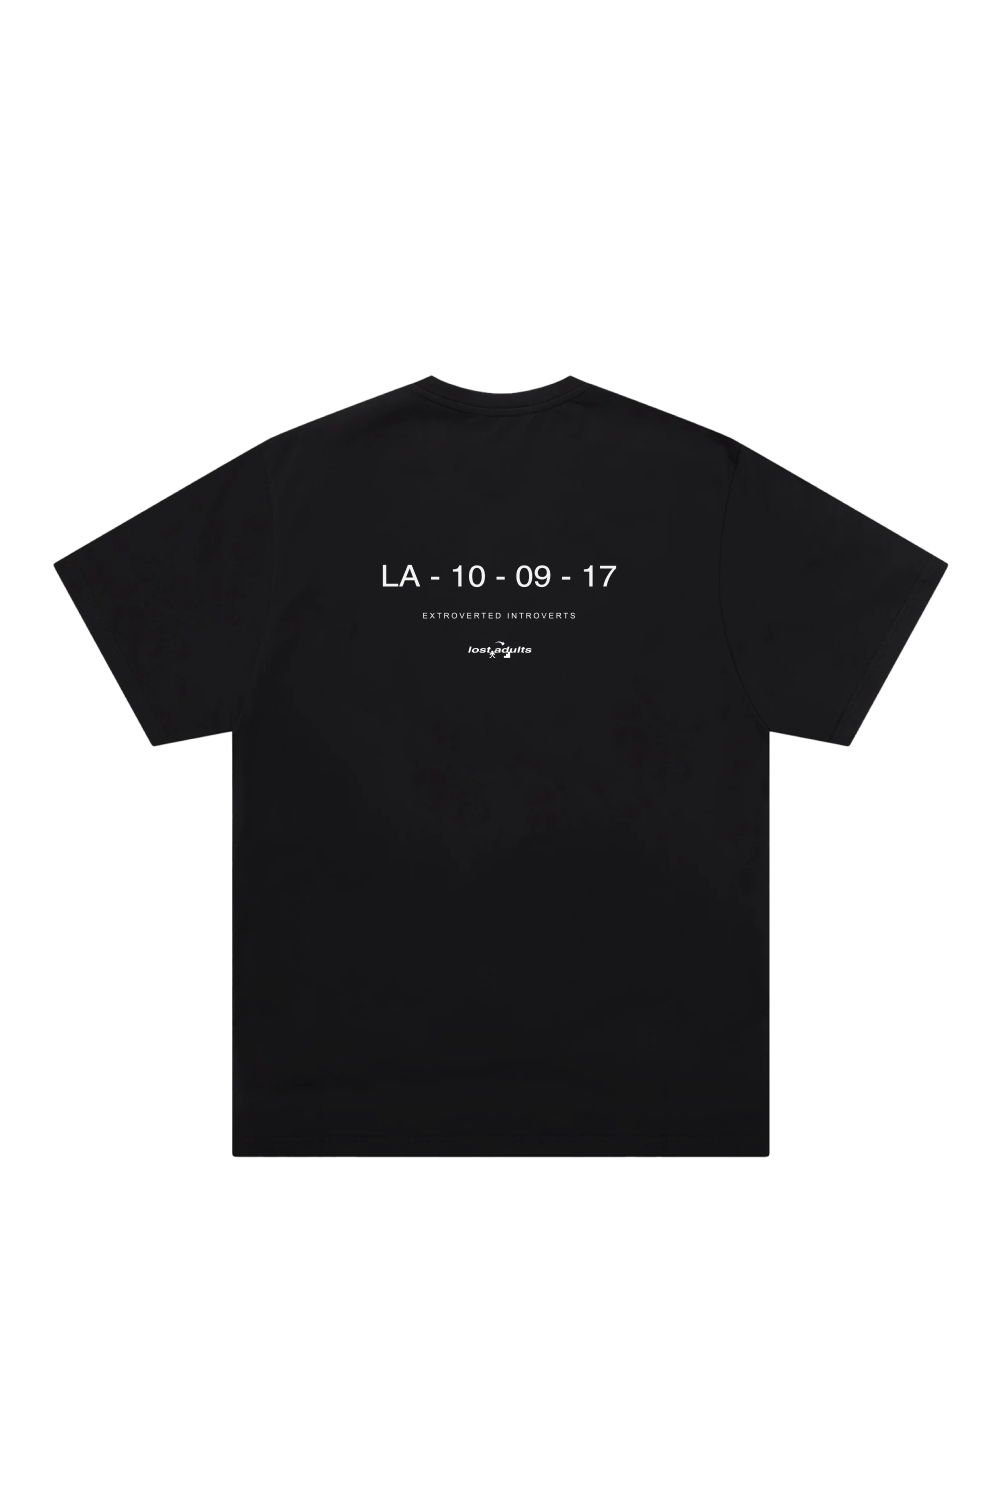 LA - 10 - 07 - 17 TSHIRT BLACK